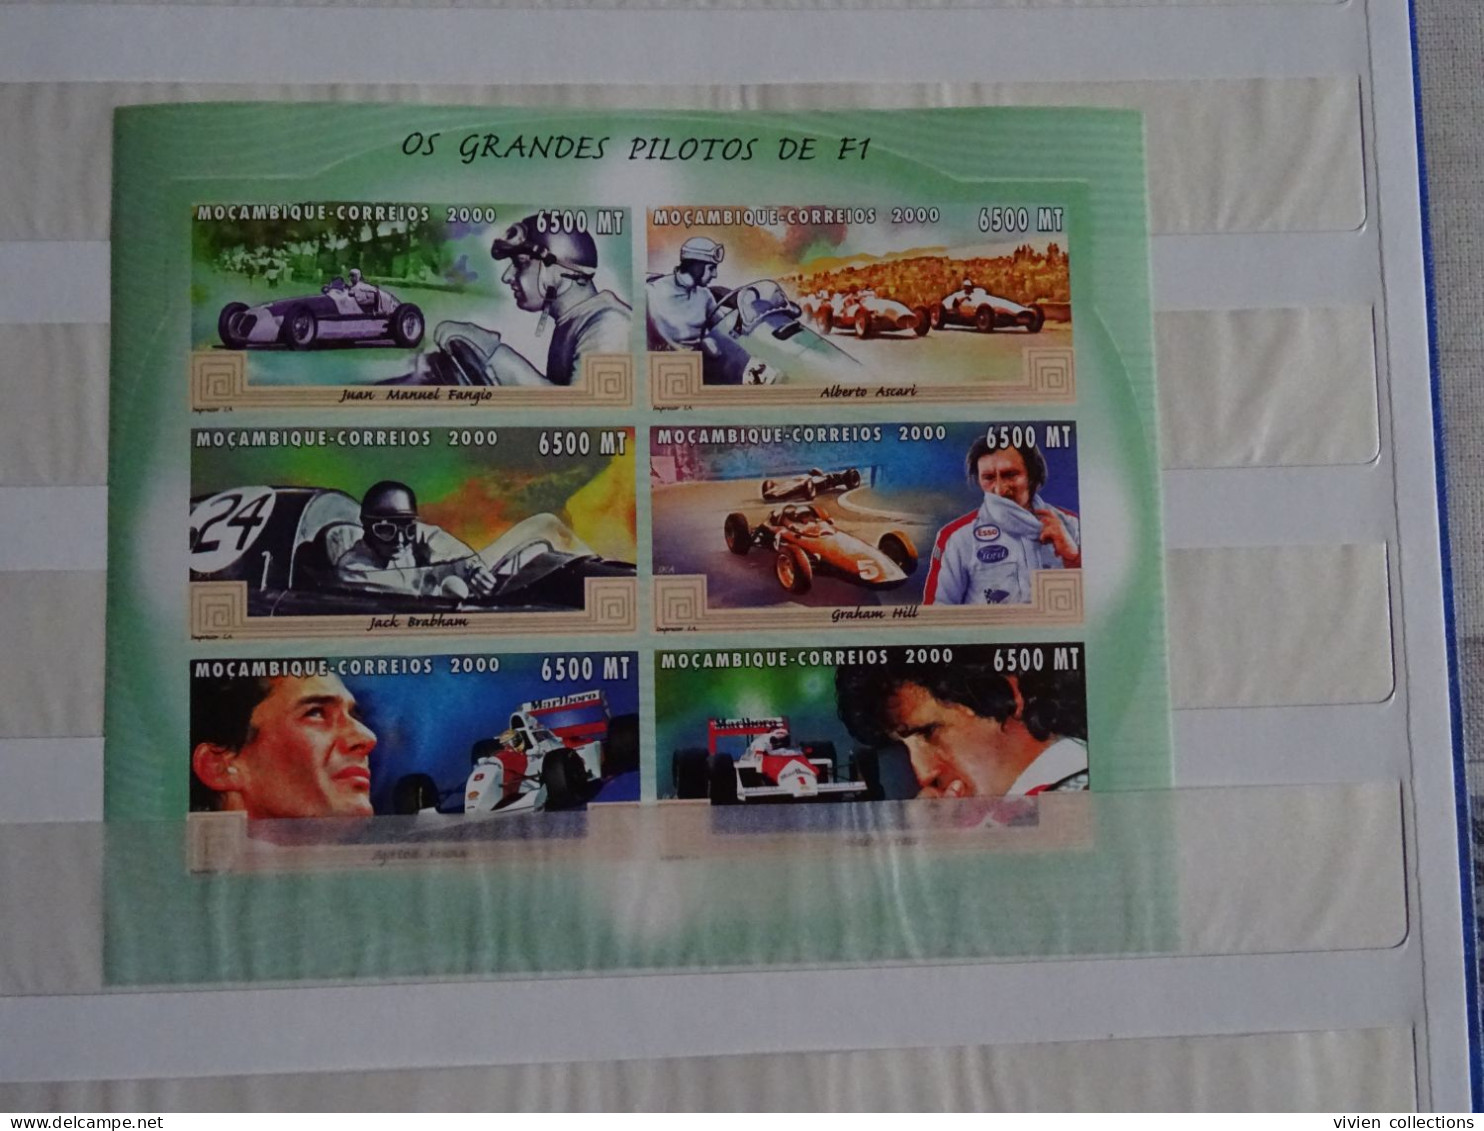 Formule I Ayrton Senna collection en album avec boitier 26 blocs dont série timbres or et argent dentelés / non dentelés